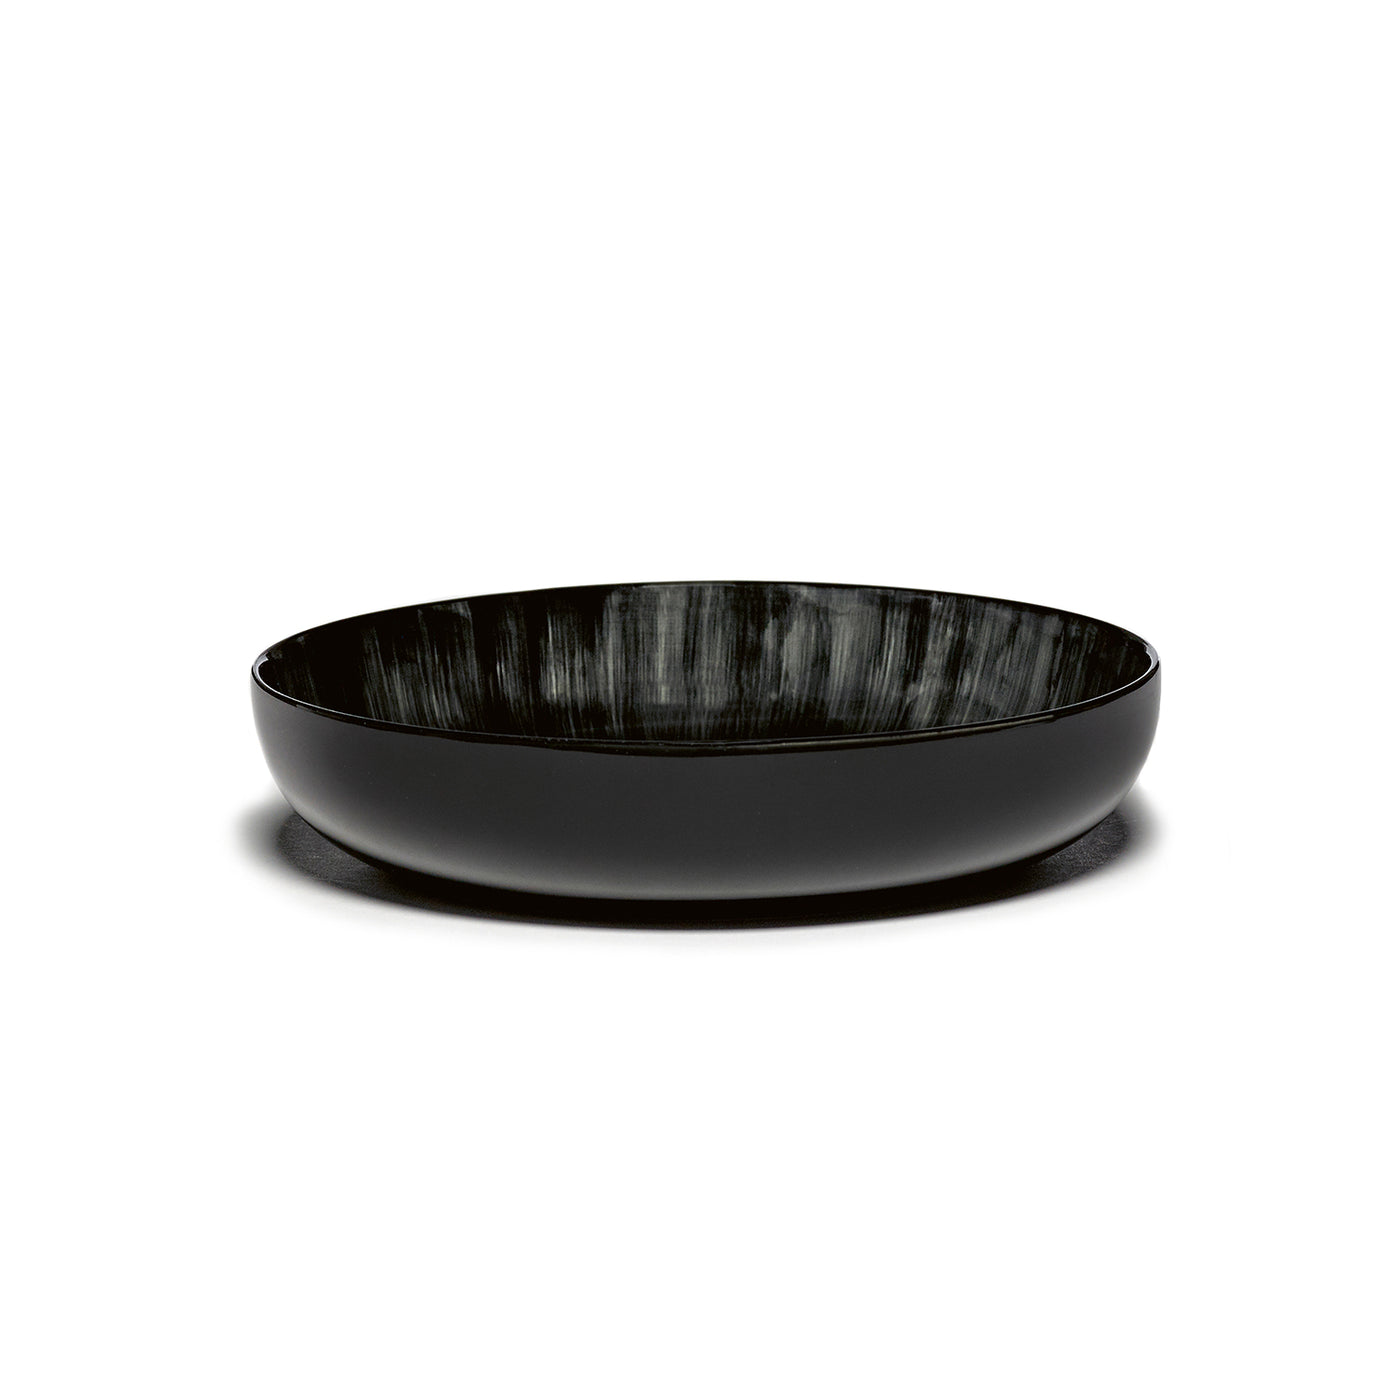 Ann Demeulmeester x Serax, Černo-bílá luxusní mísa na musli, vysoký talíř, jídelní set, luxusní jídelní souprava